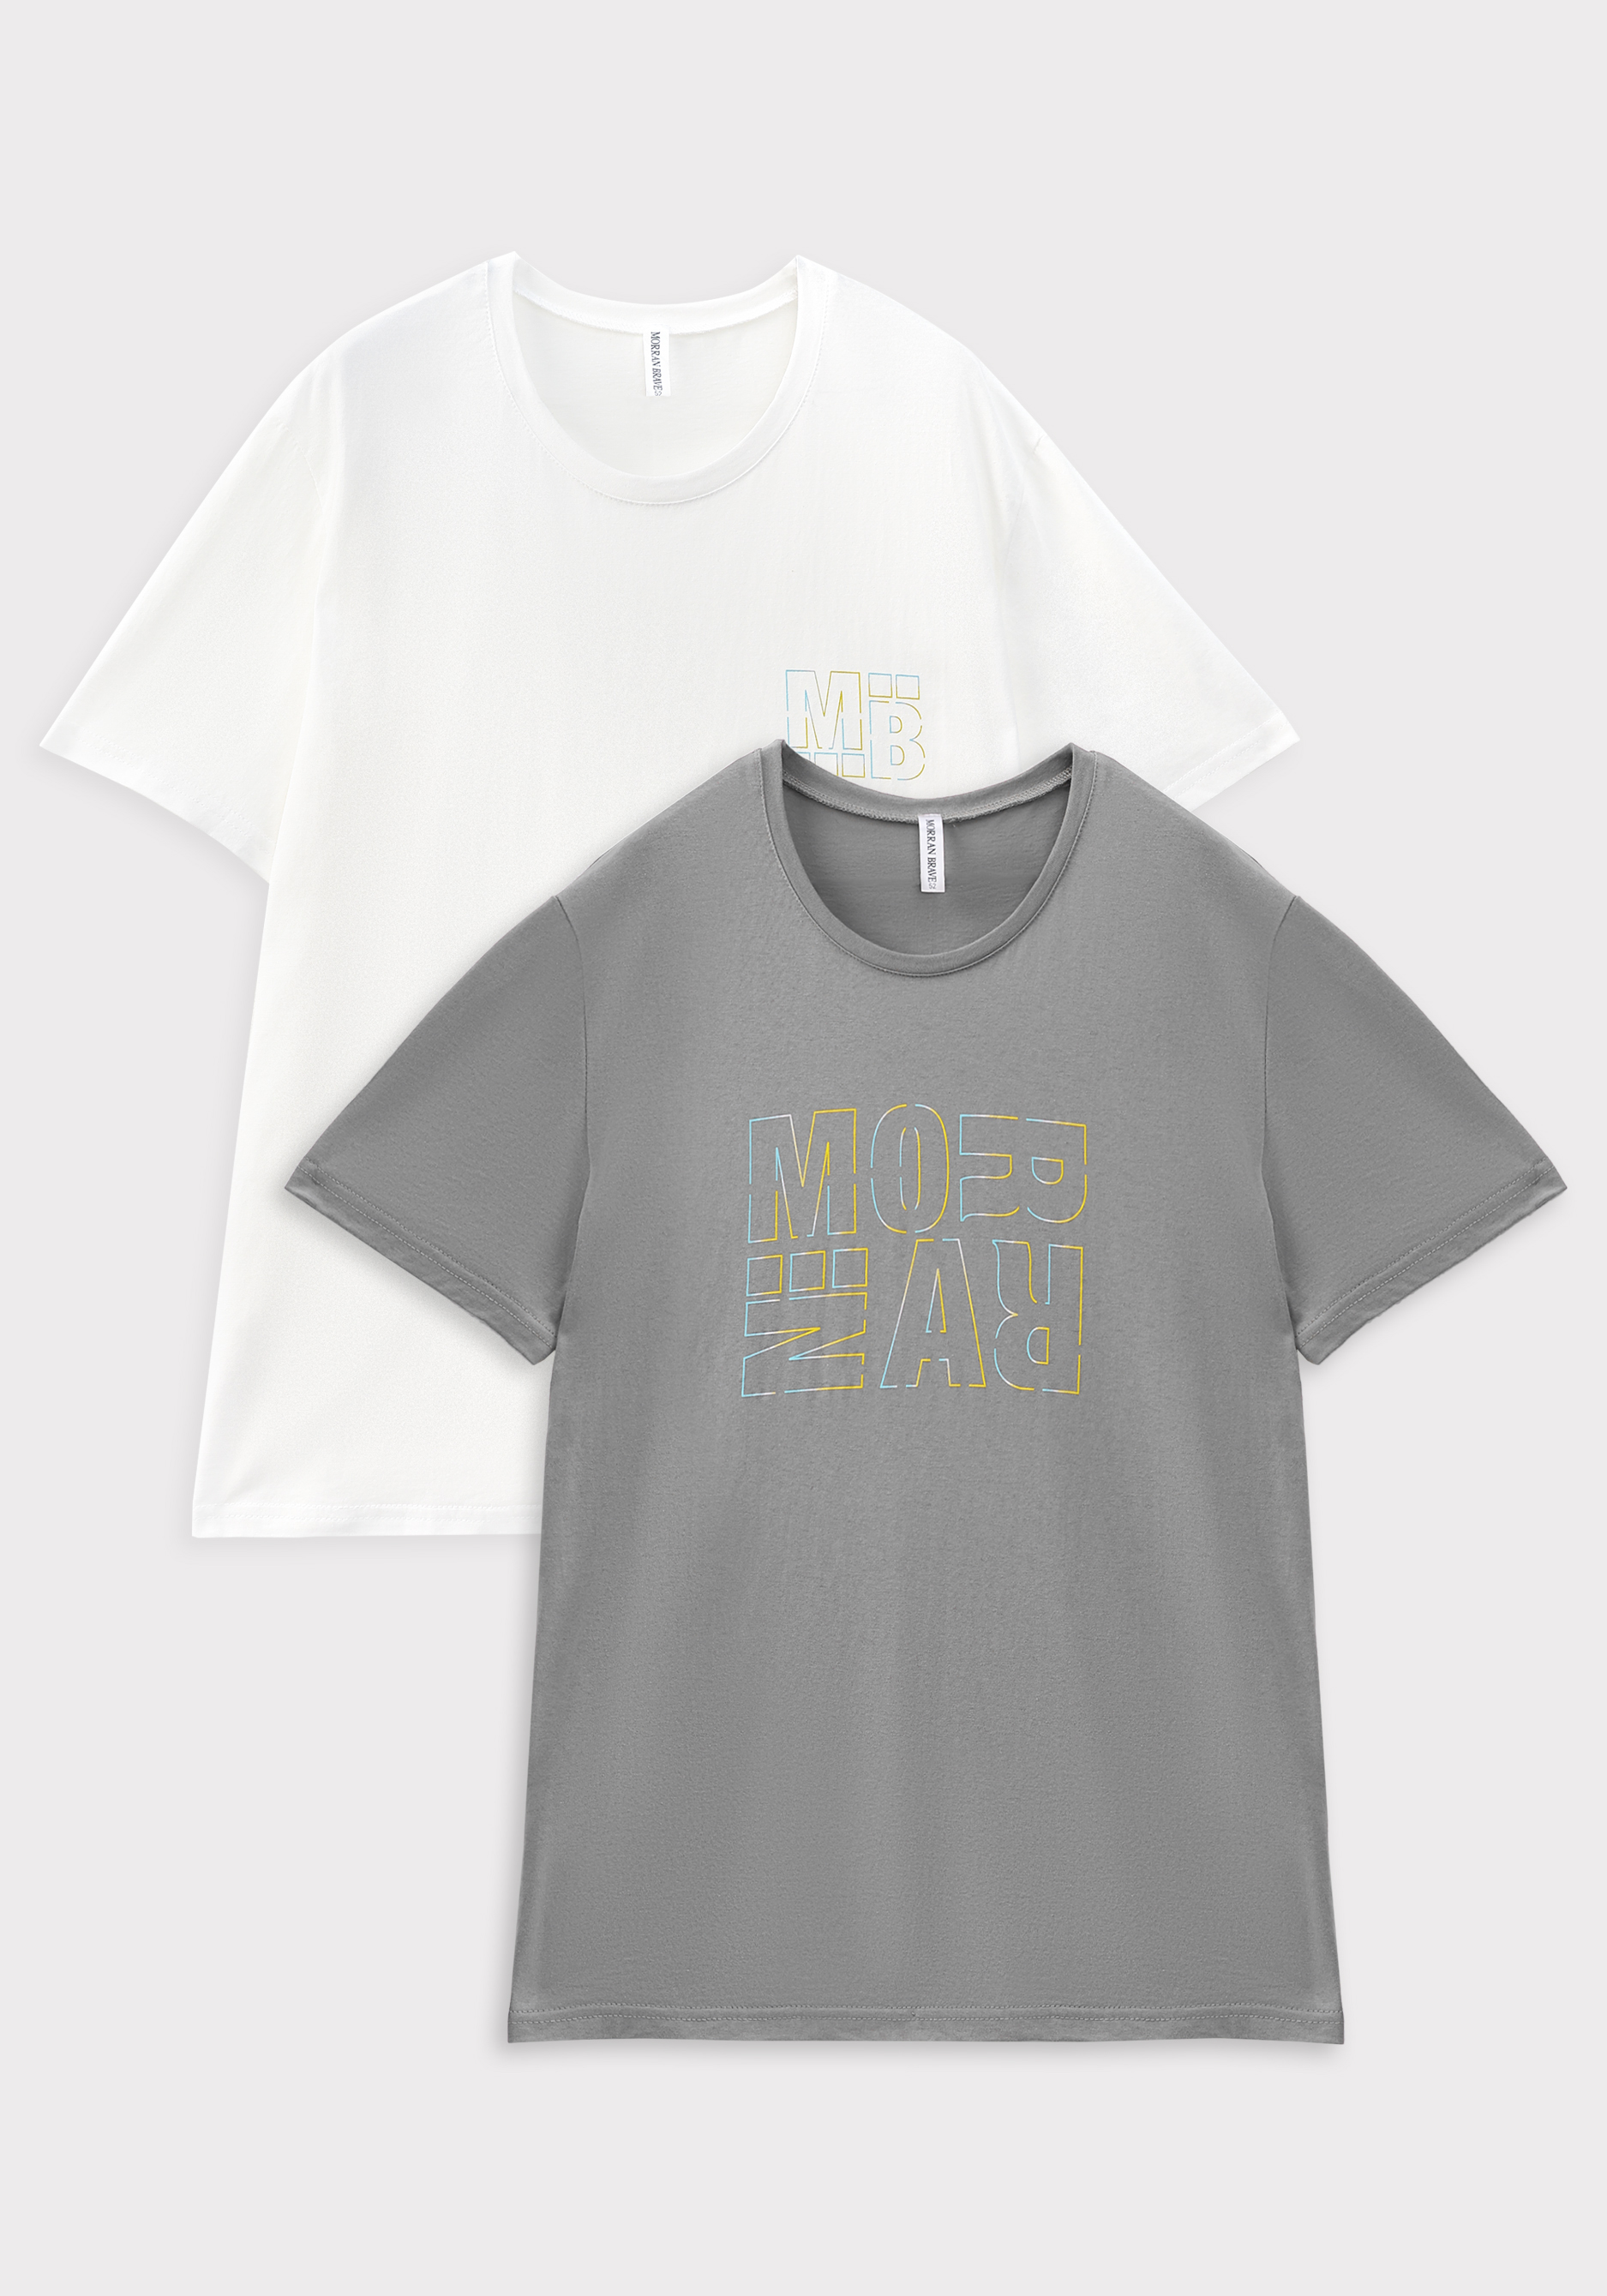 Комплект футболок с лаконичным принтом, 2 шт. именной комплект прикольных парных футболок с принтом свадебное сердце